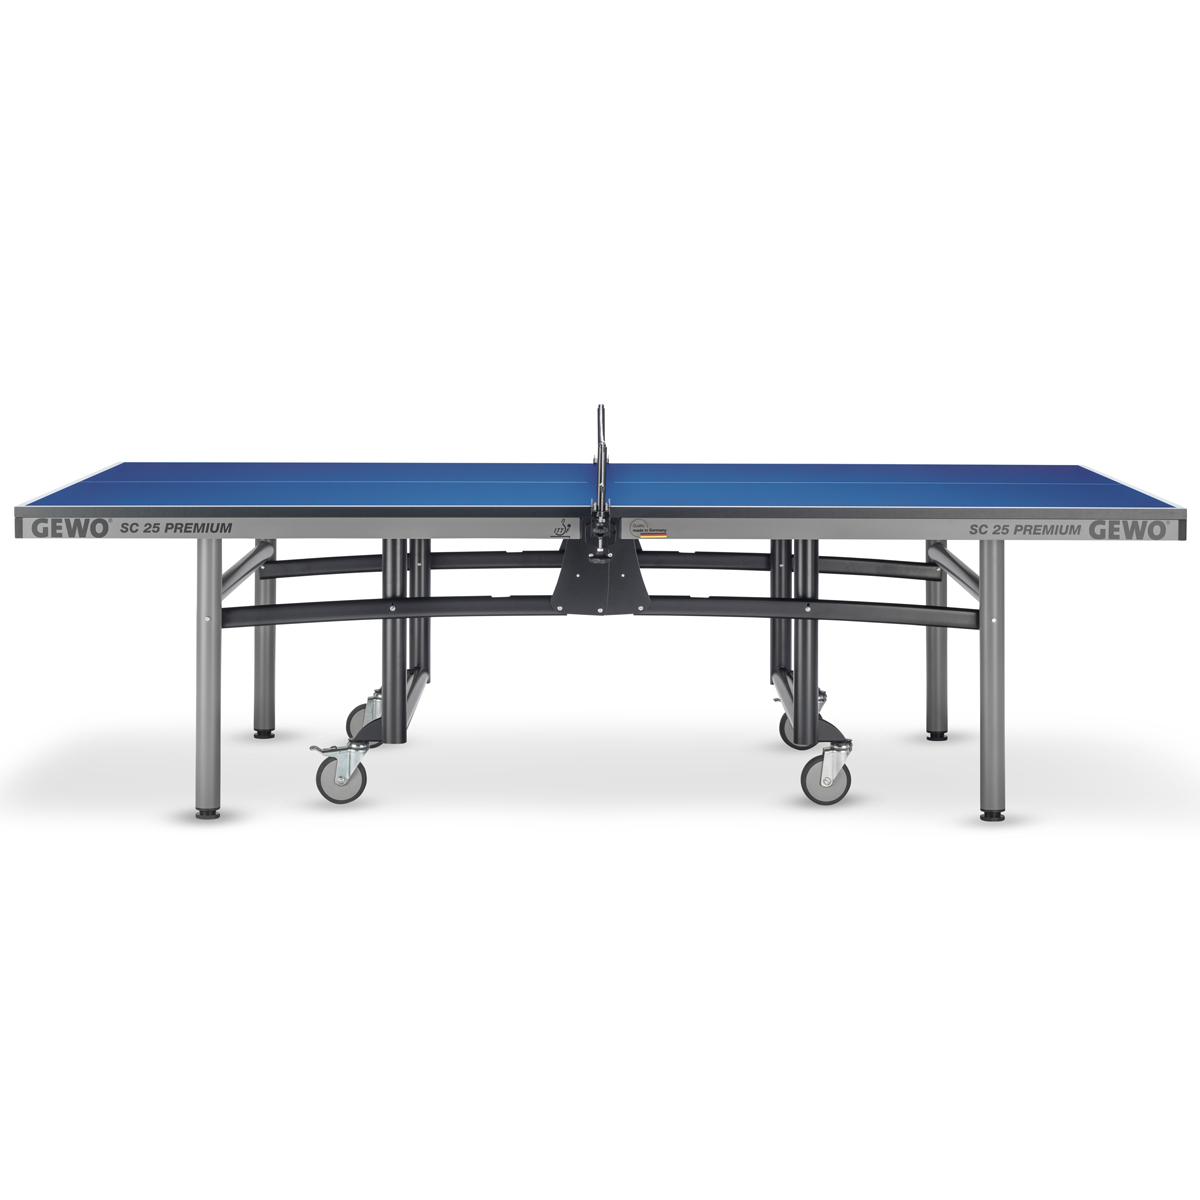 GEWO 2er Set Tisch SC25 Premium + 2 Netze blau